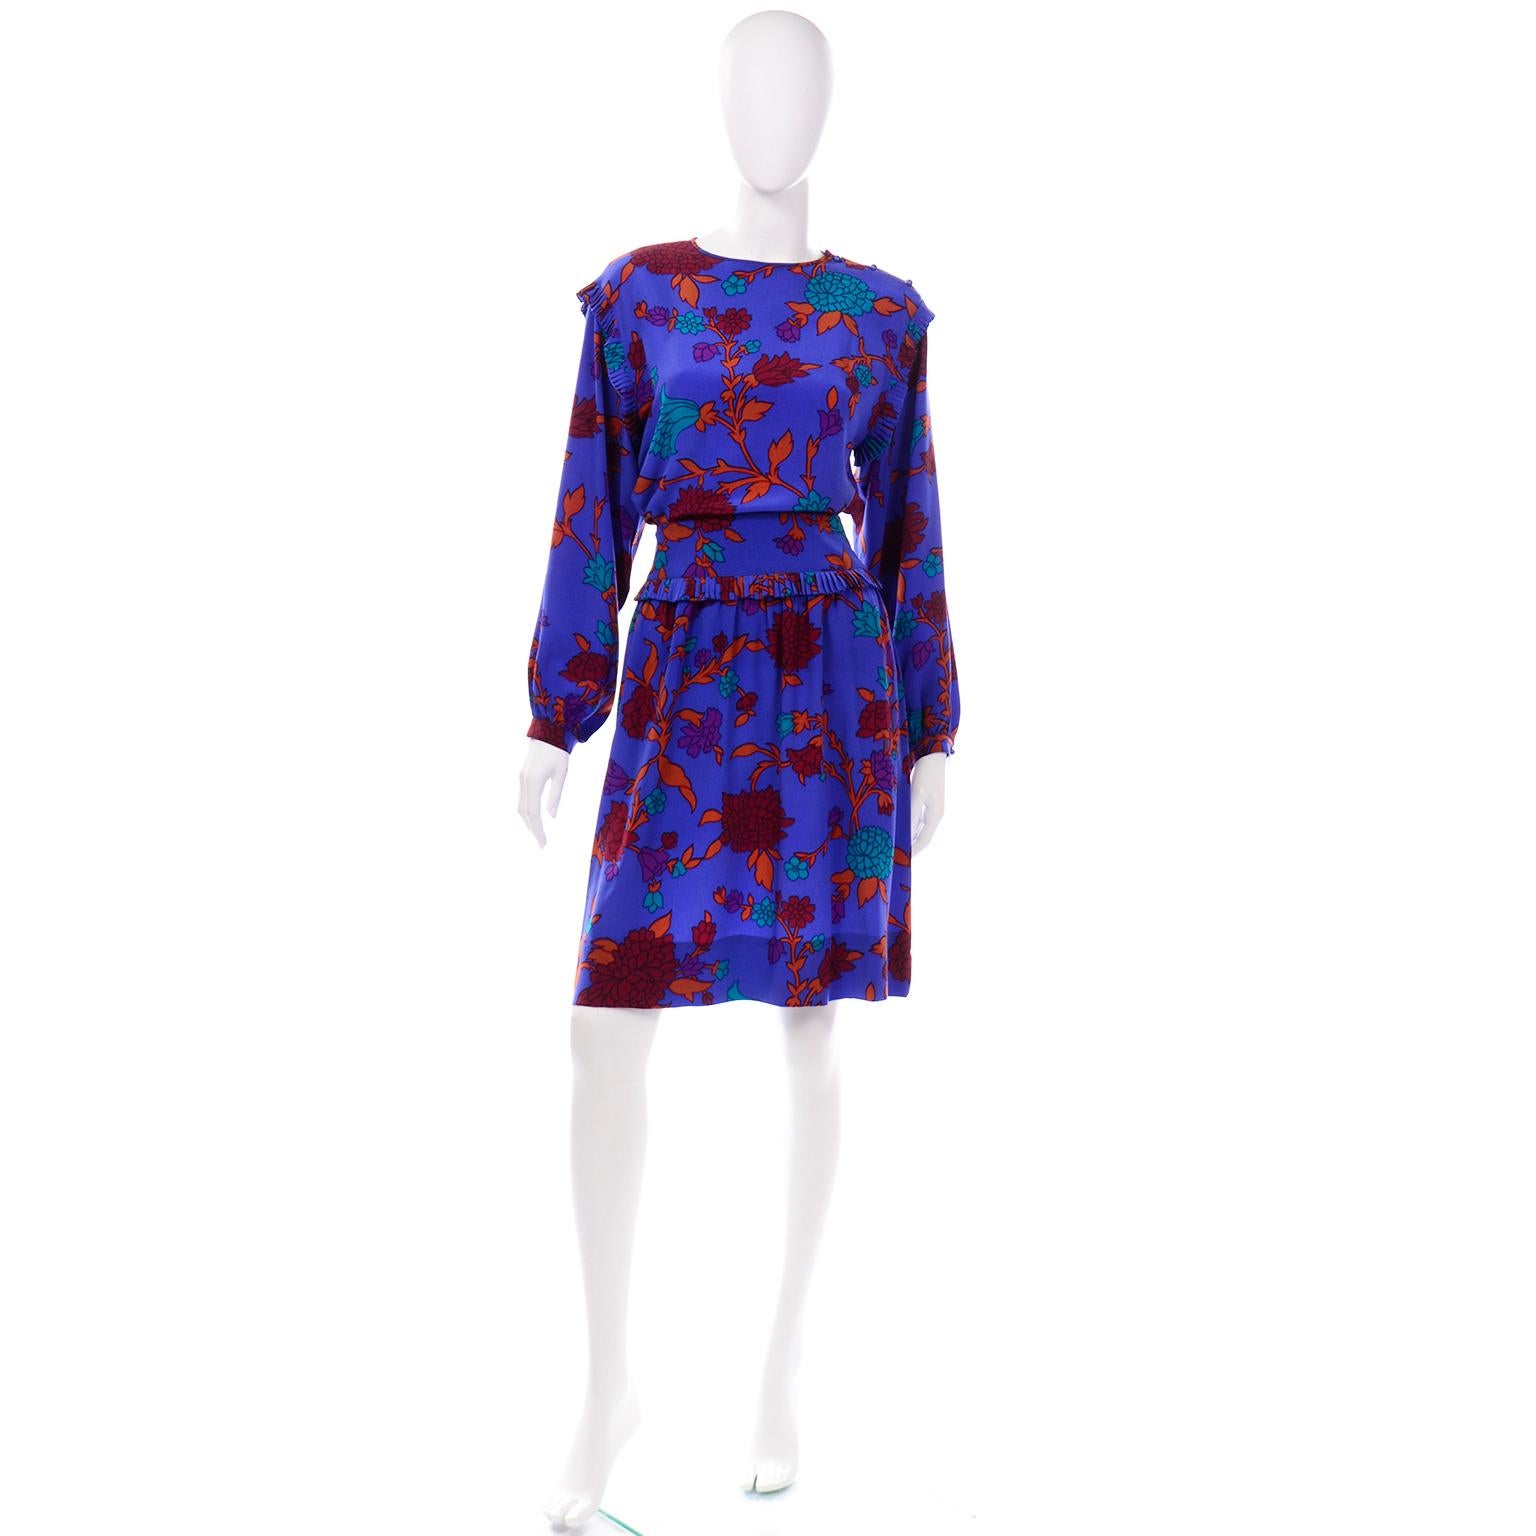 C'est une très belle robe vintage 2 pièces d'Albert Nipon dans un imprimé floral en soie bleu vif. Nous adorons les pièces vintage d'Albert Nipon et nous aimons particulièrement ses tissus et ses imprimés.  C'est en fait Pearl Nipon, la femme